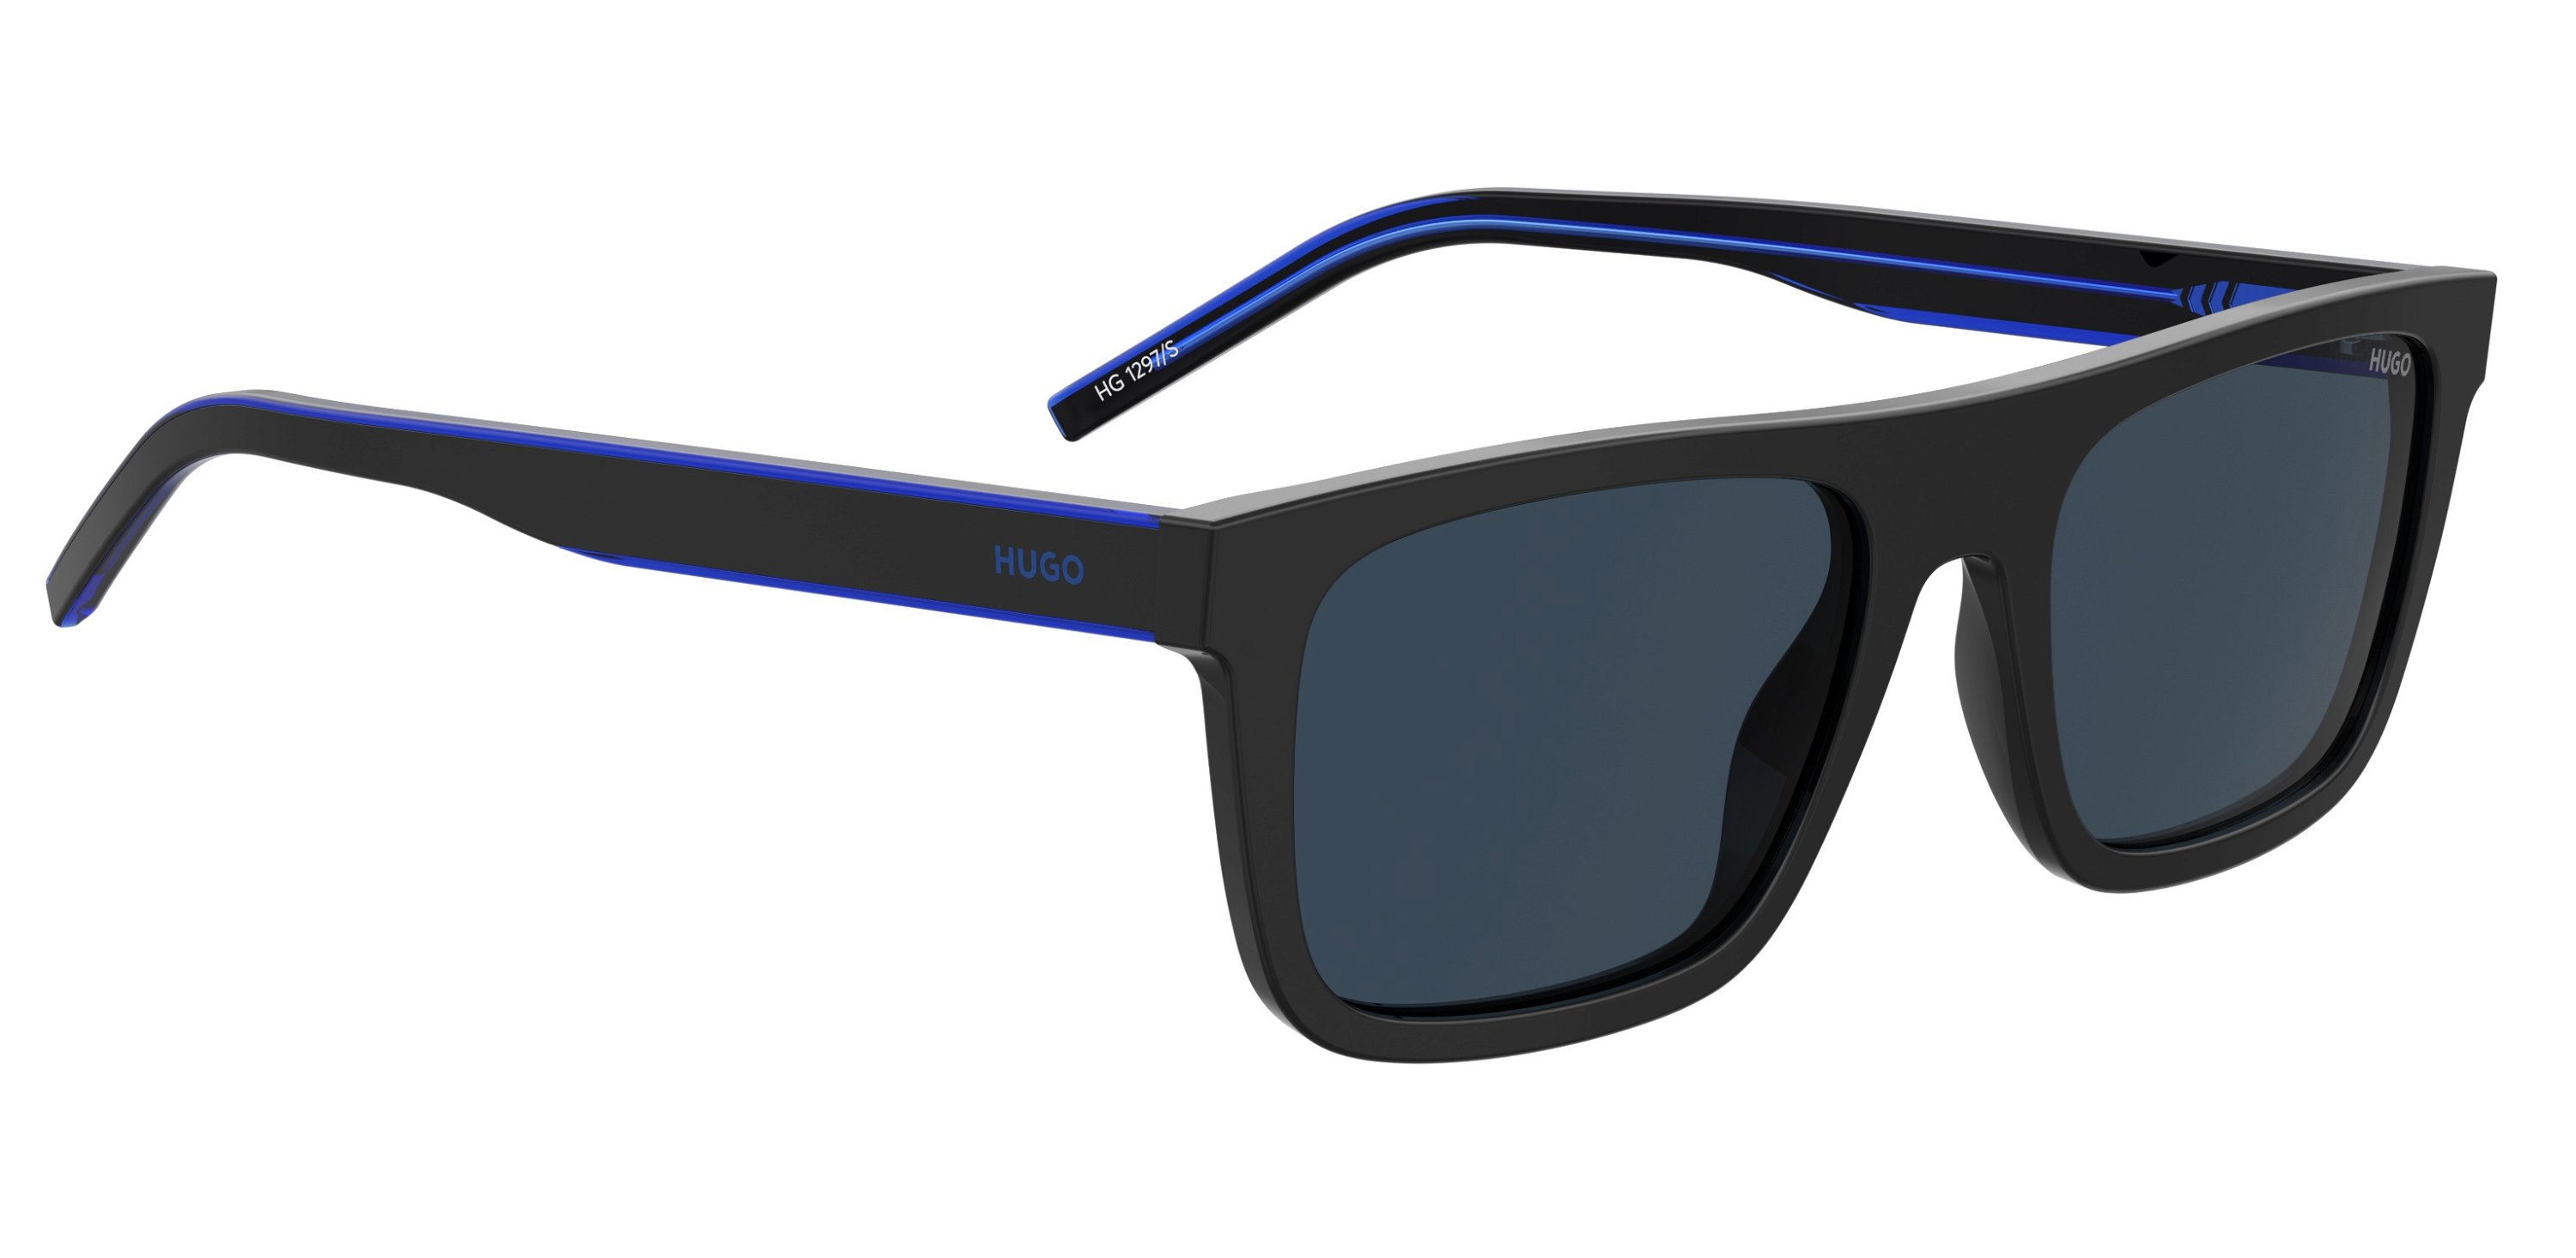 Das Bild zeigt die Sonnenbrille HG1297/S D51 von der Marke Hugo in blau/schwarz.